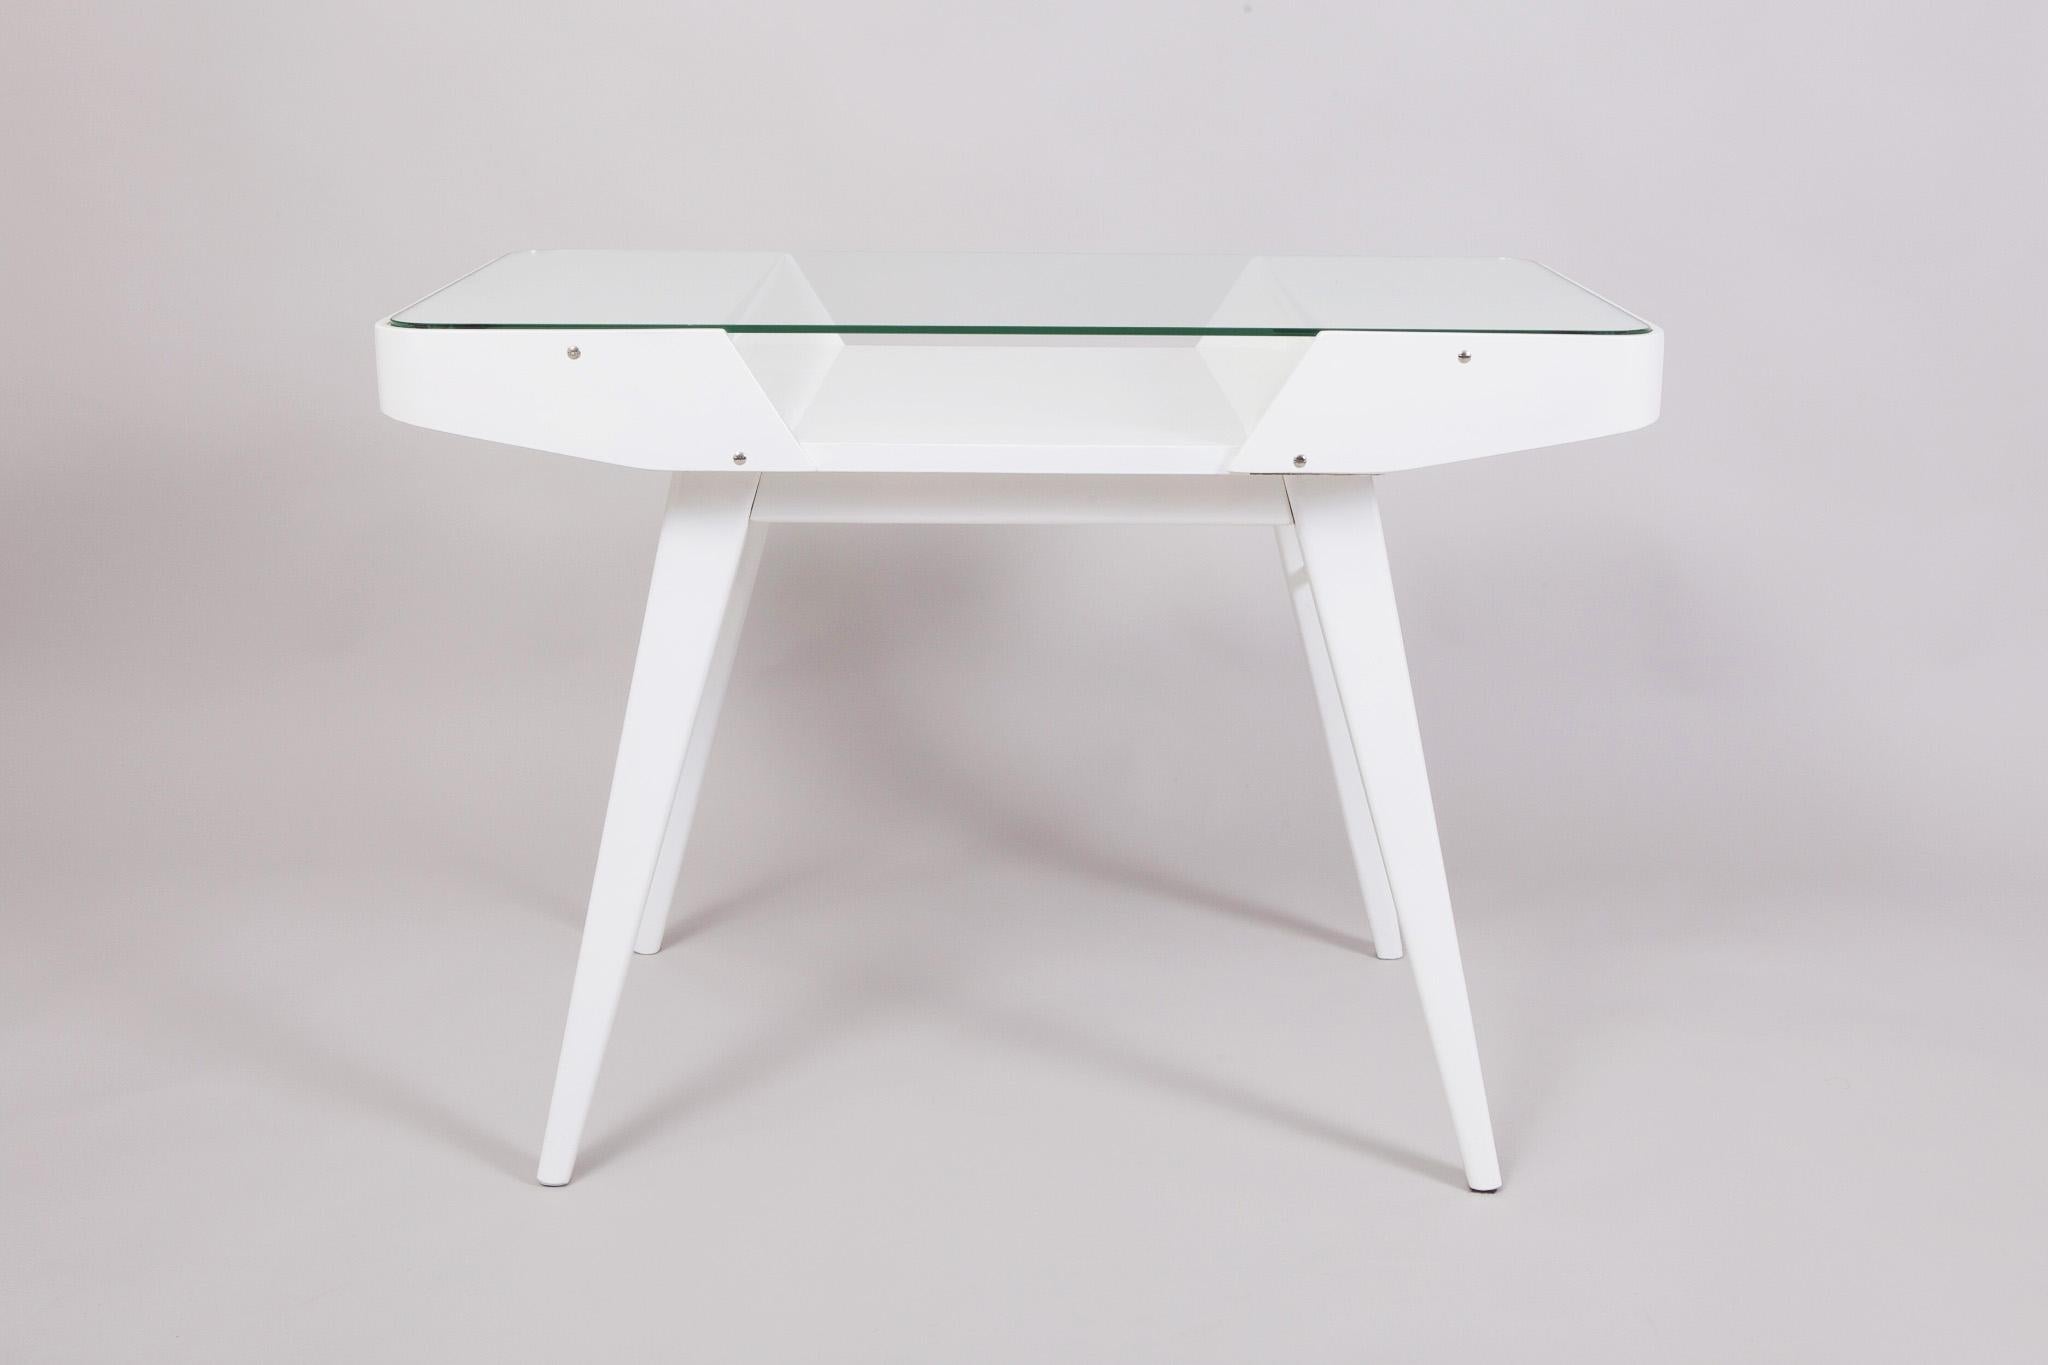 Table blanche du milieu du siècle, fabriquée dans les années 50 en Tchéquie. Conçu par František Jirák et fabriqué par Tatra Nábytok. La table est fabriquée en bois laqué et en verre.